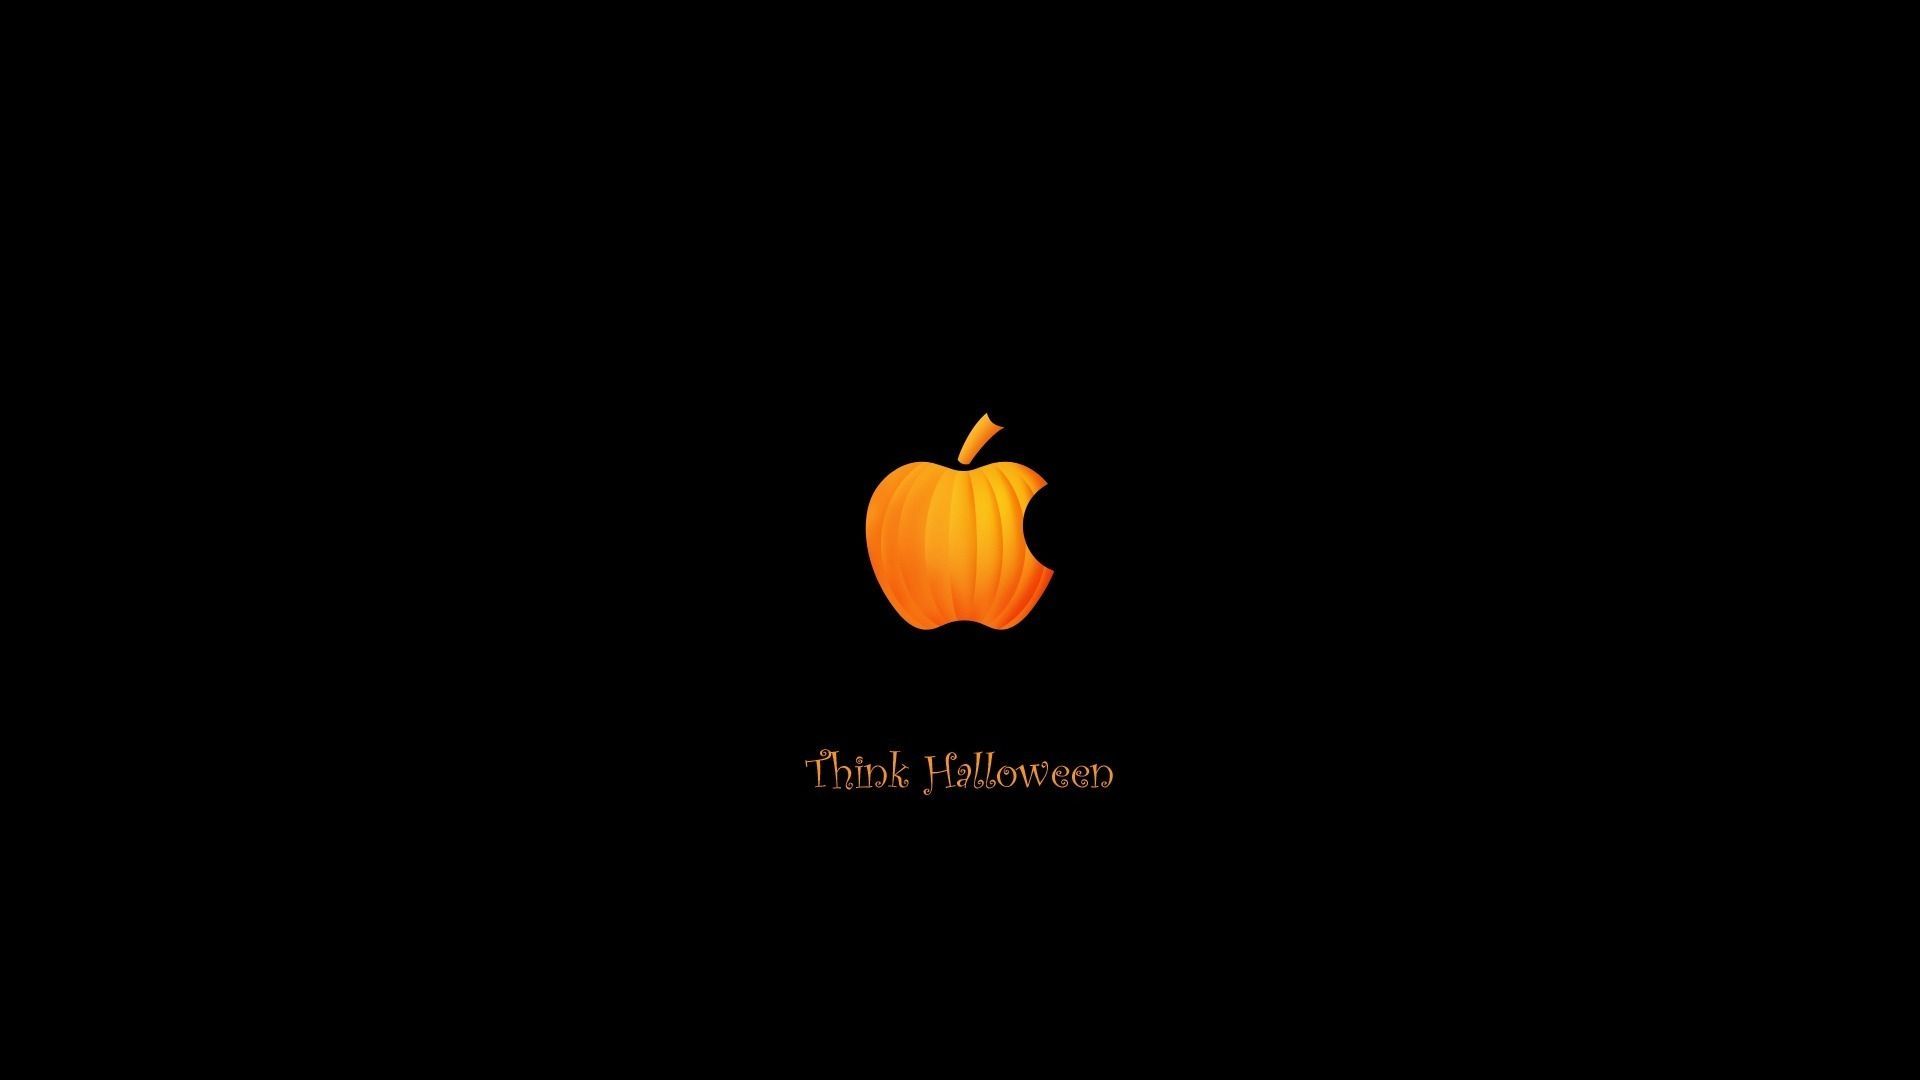 View source image. Halloween wallpaper iphone background, Macbook desktop background, Halloween desktop wallpaper